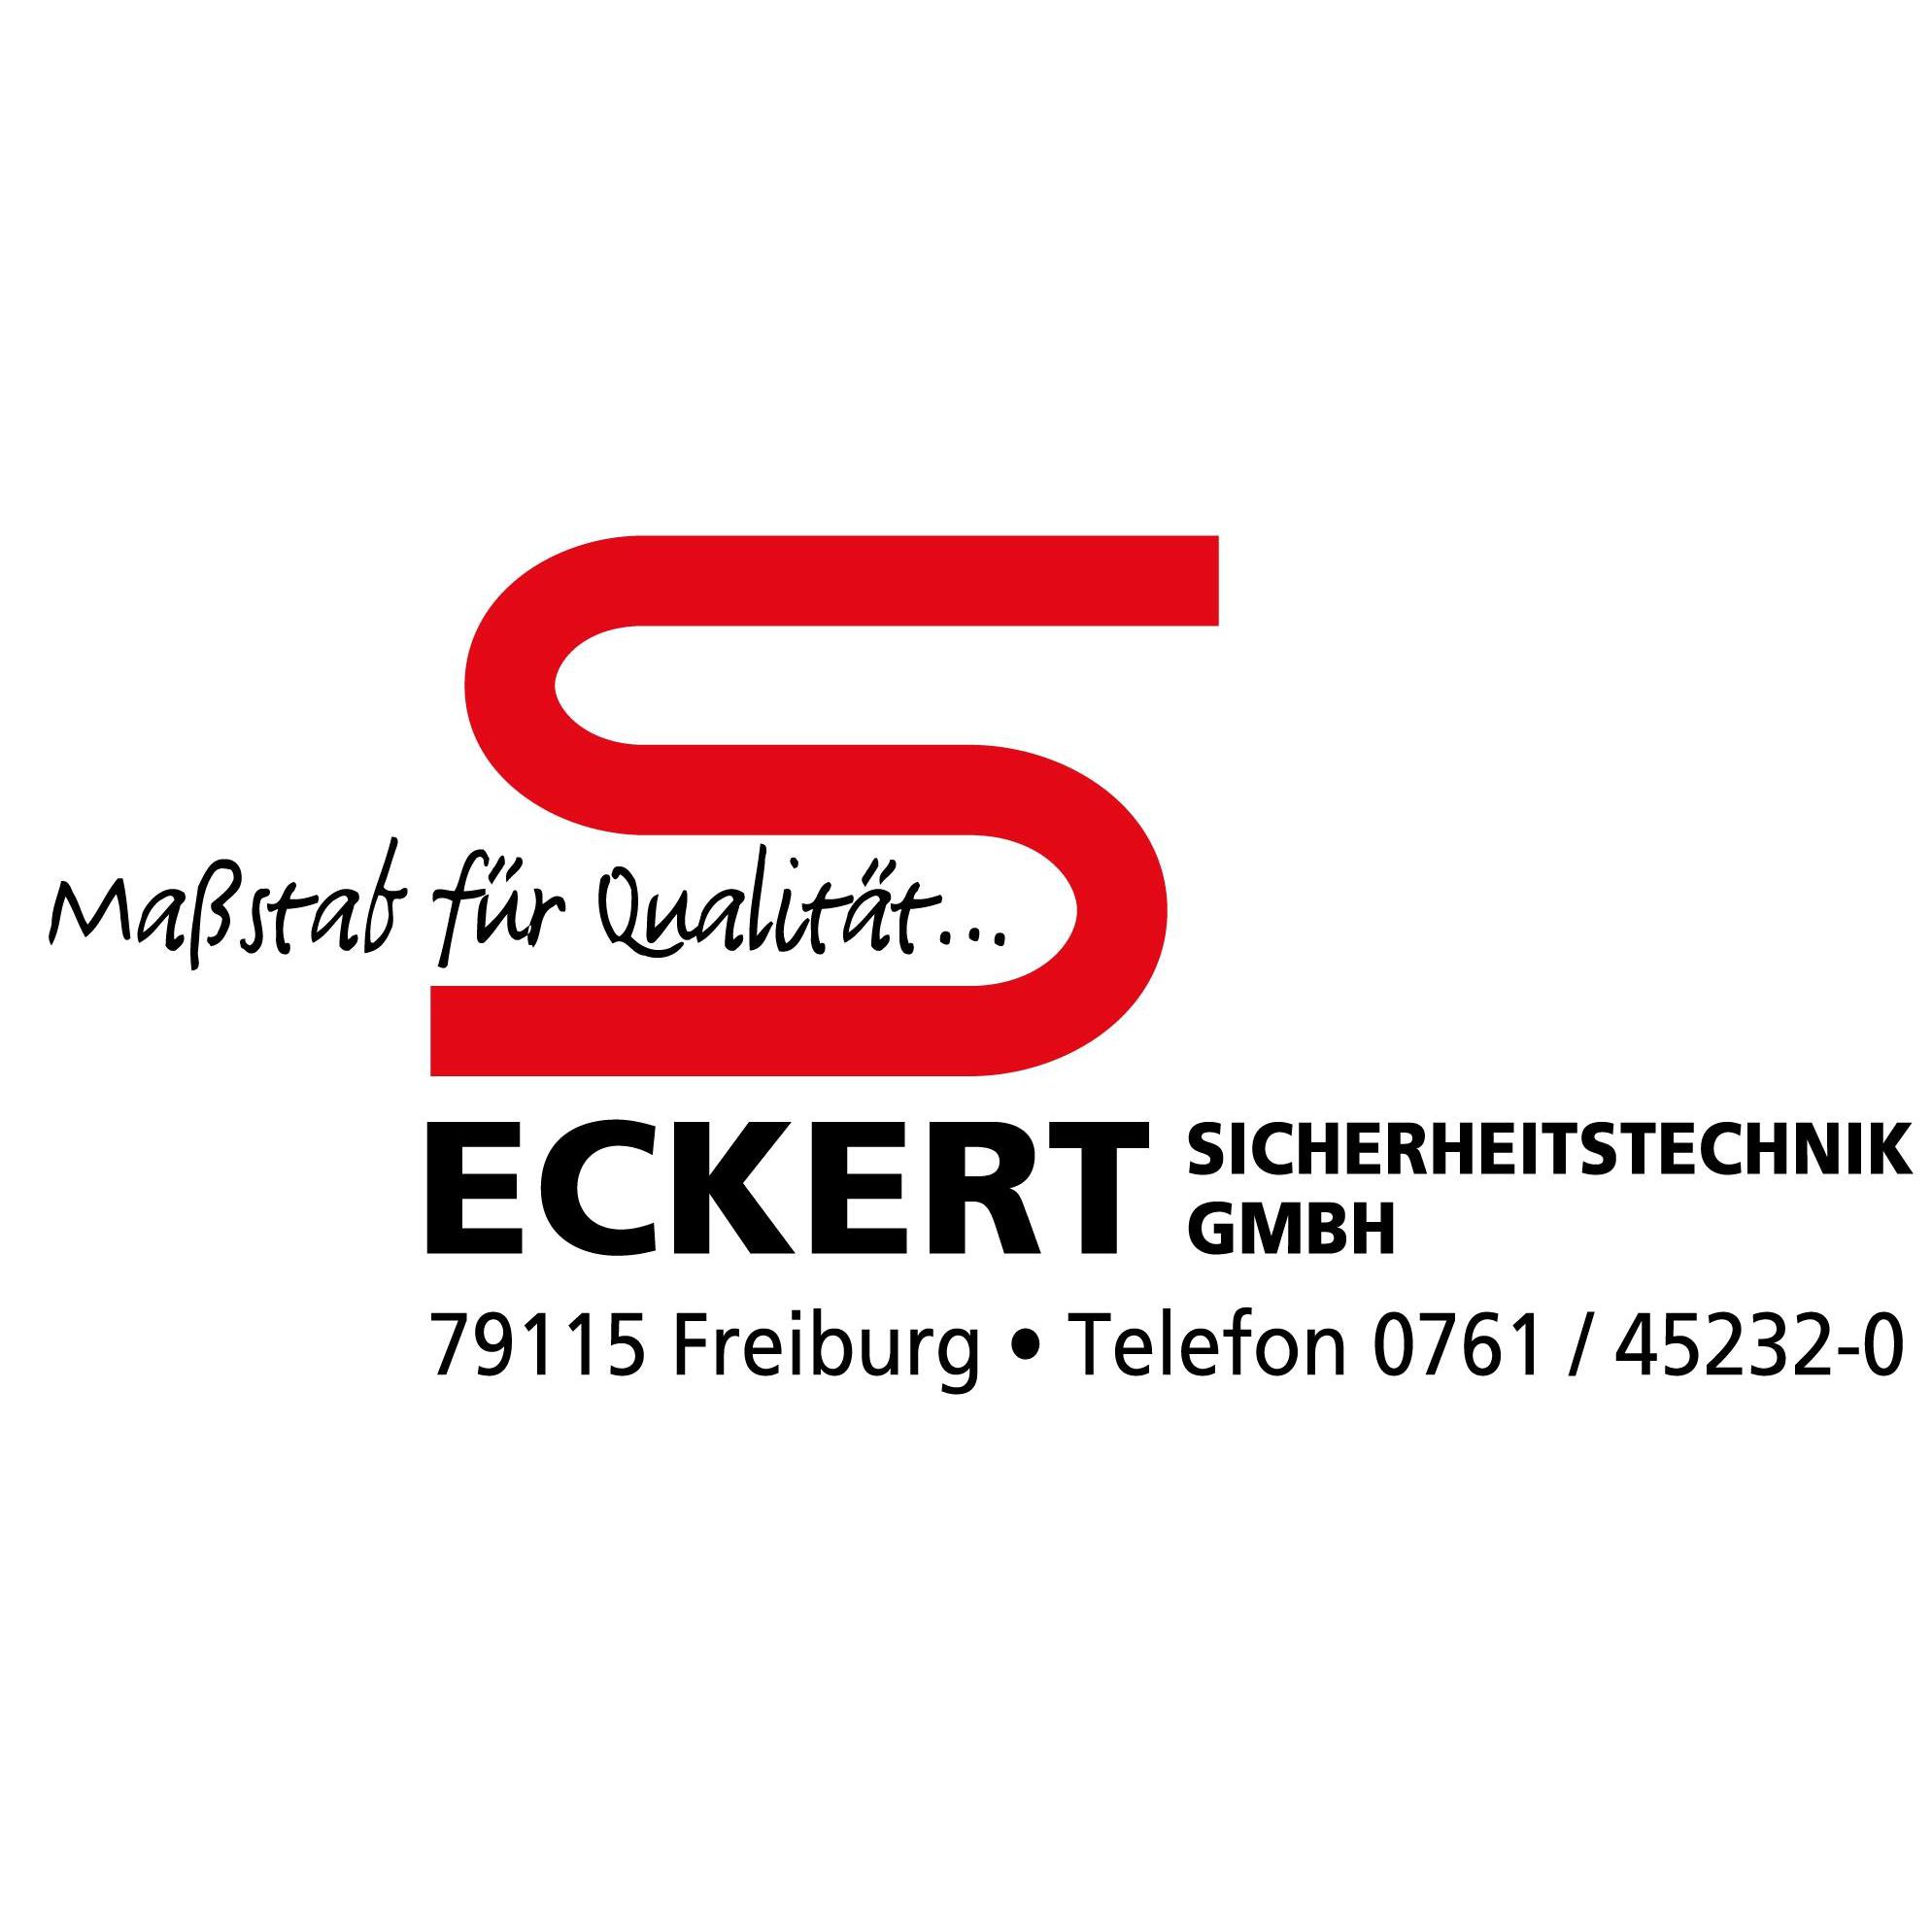 Eckert Sicherheitstechnik GmbH Logo